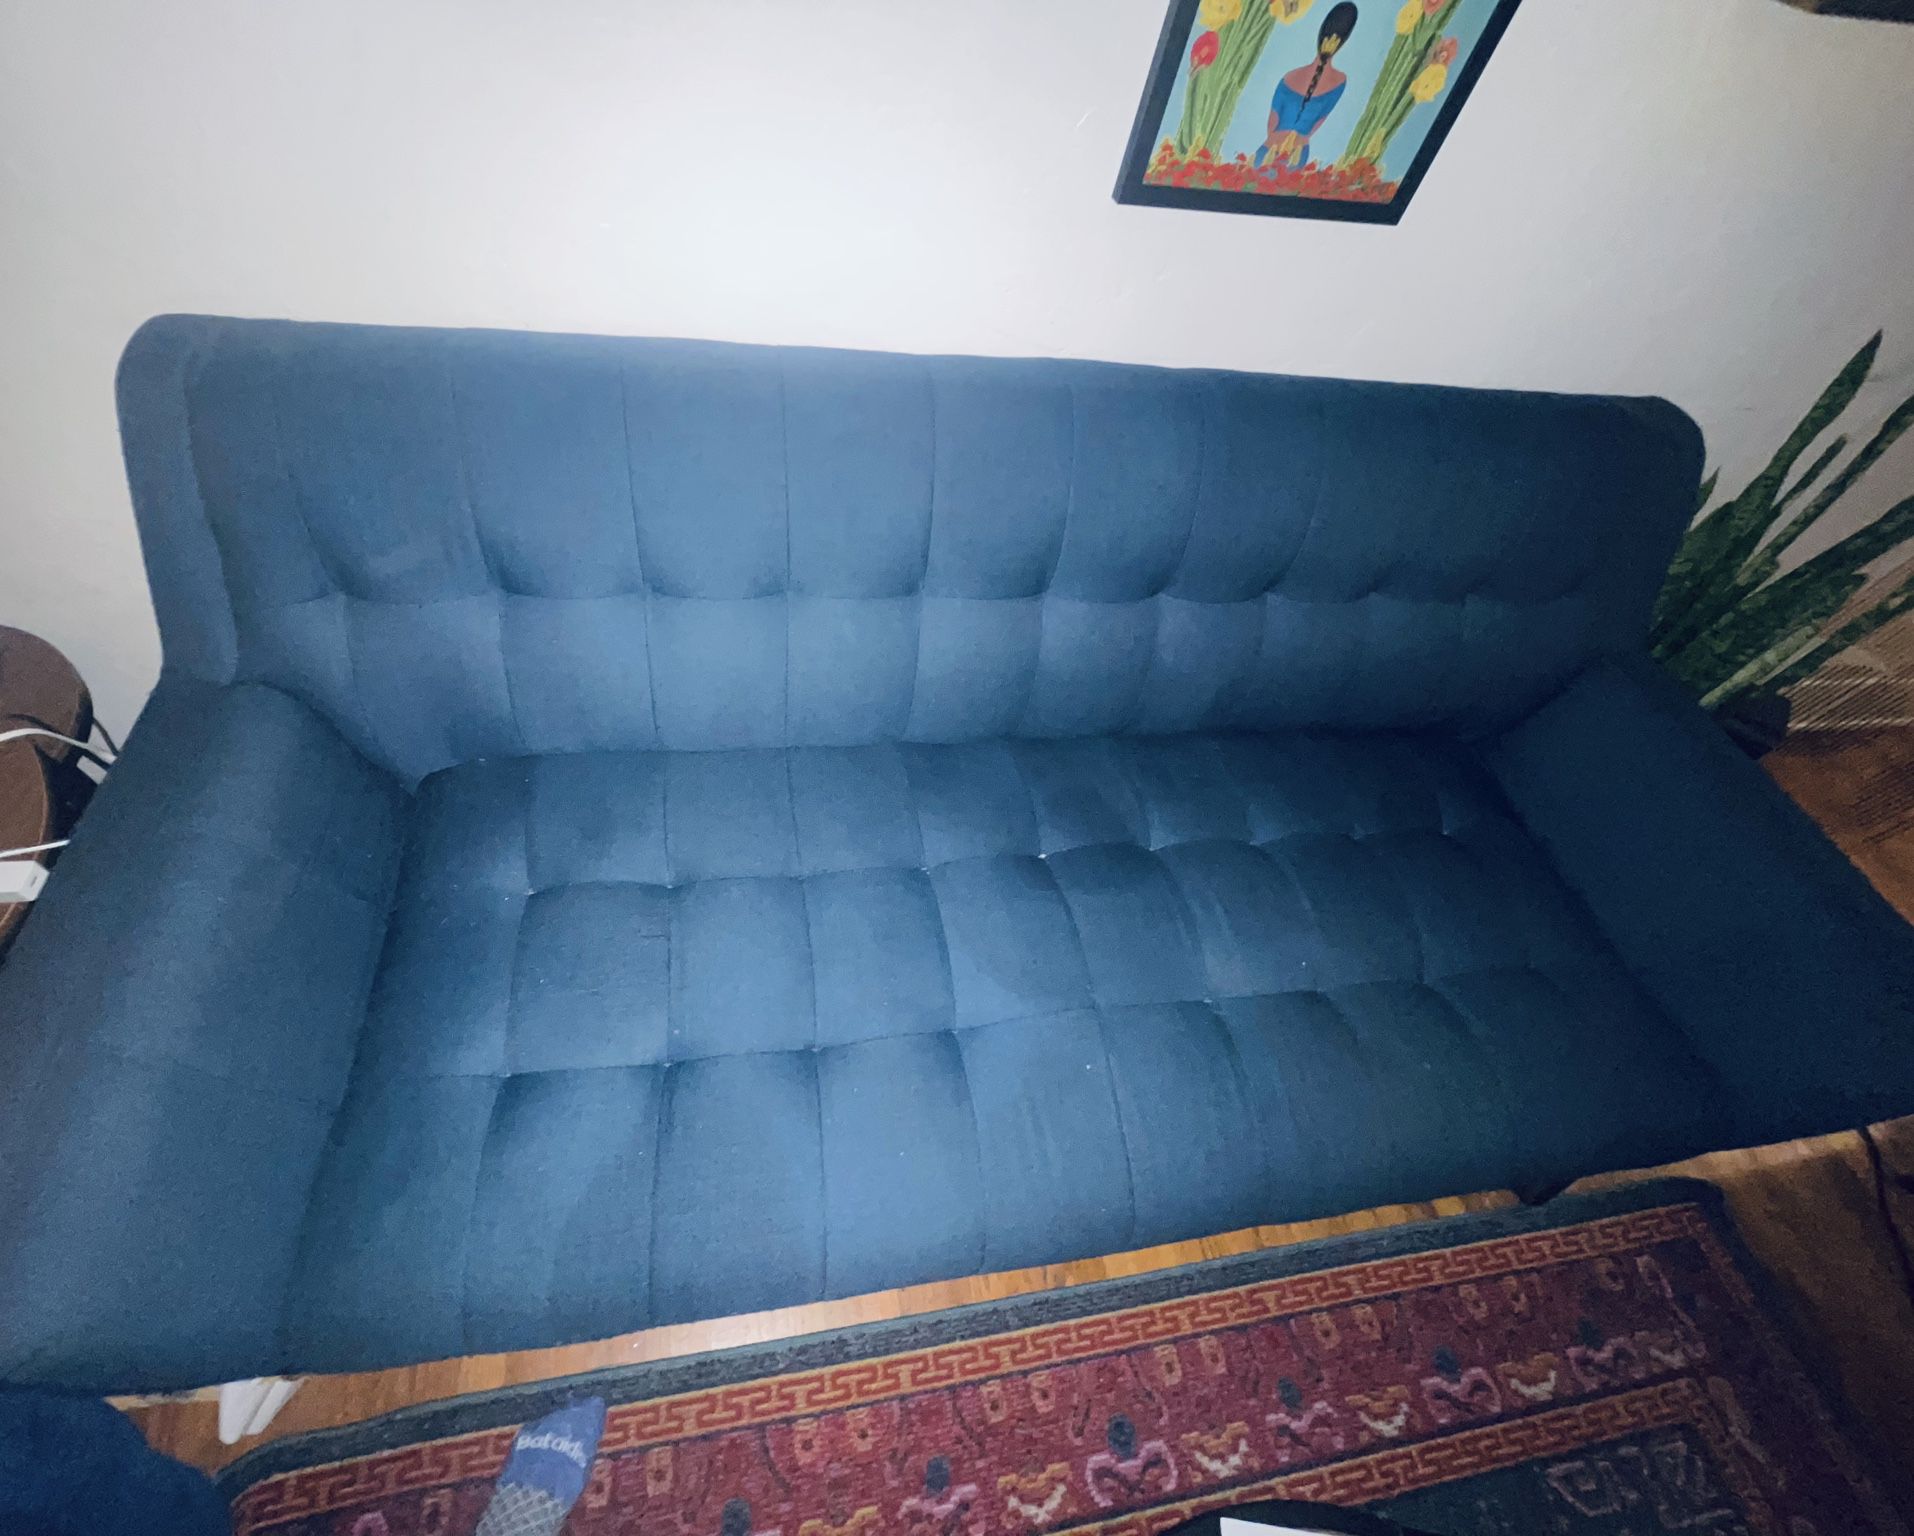 blue ginger mid century modern sofa